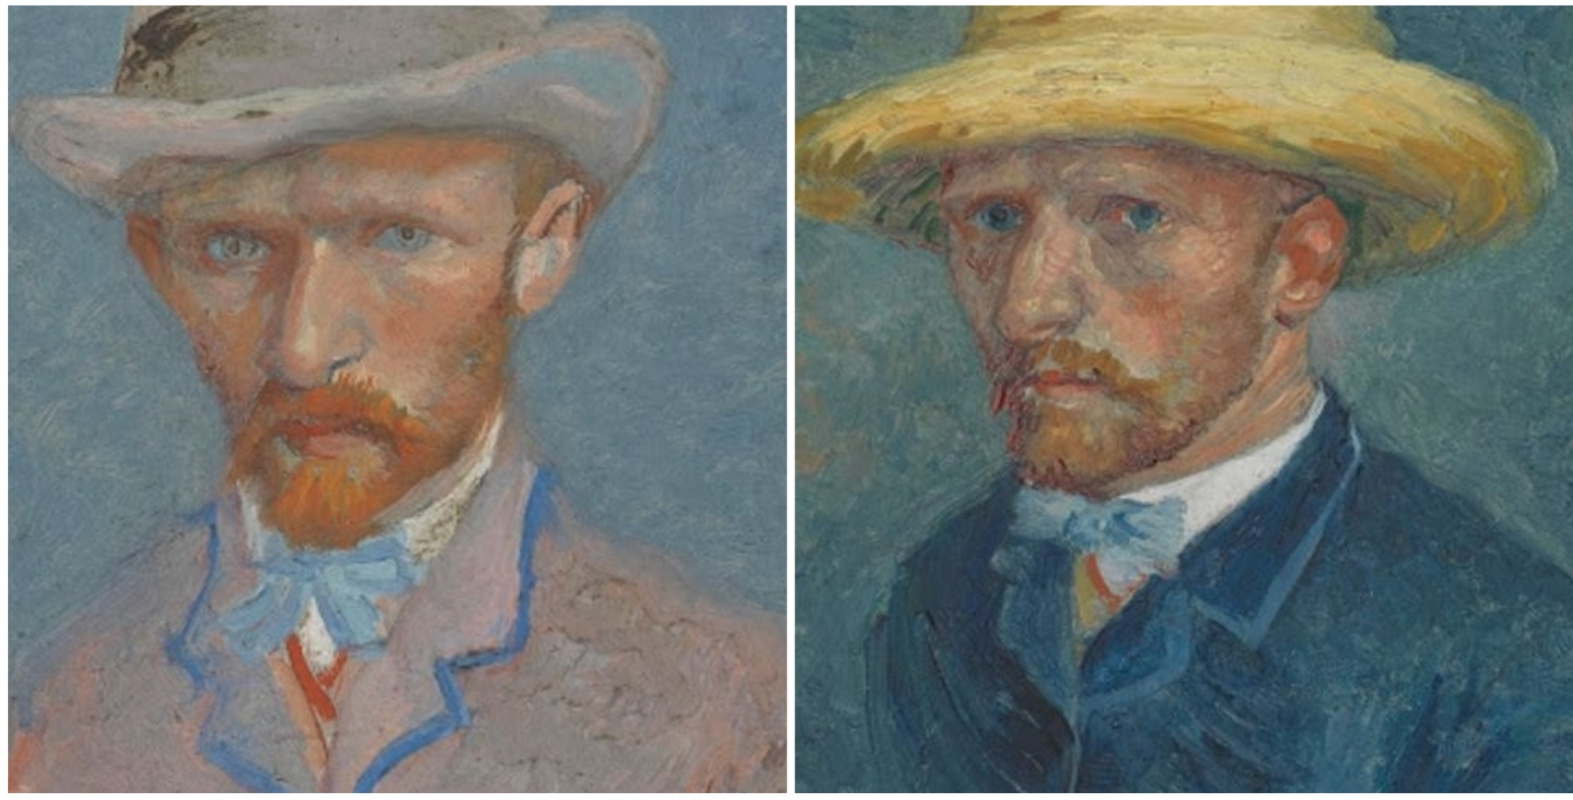 Всё дело в шляпах: учёный утверждает, что музей путает портреты двух Ван Гогов